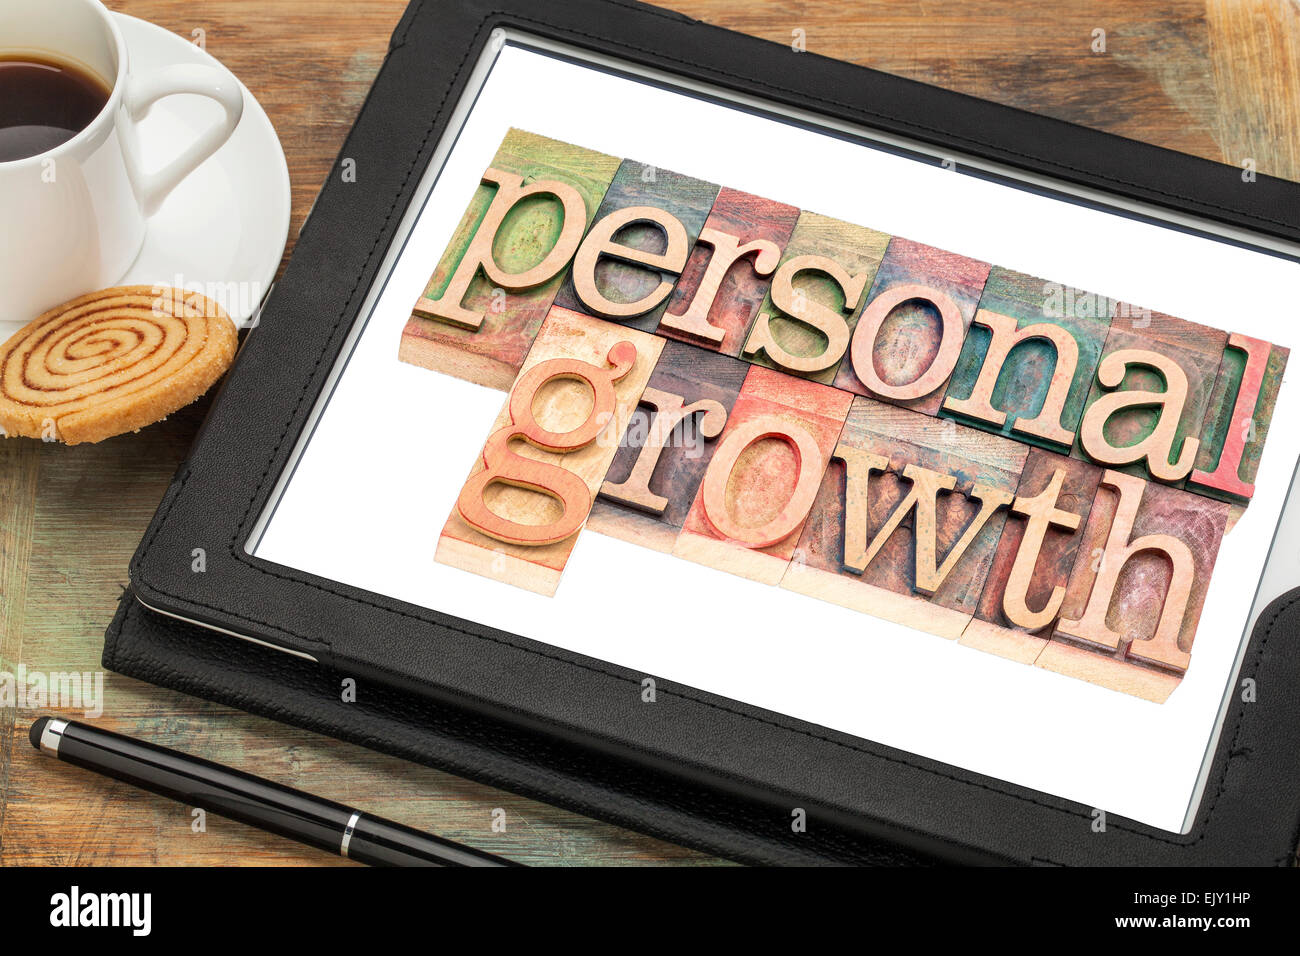 persönliches Wachstum Typografie - Text im Buchdruck Holzart auf einem digitalen Tablet mit einer Tasse Kaffee Stockfoto